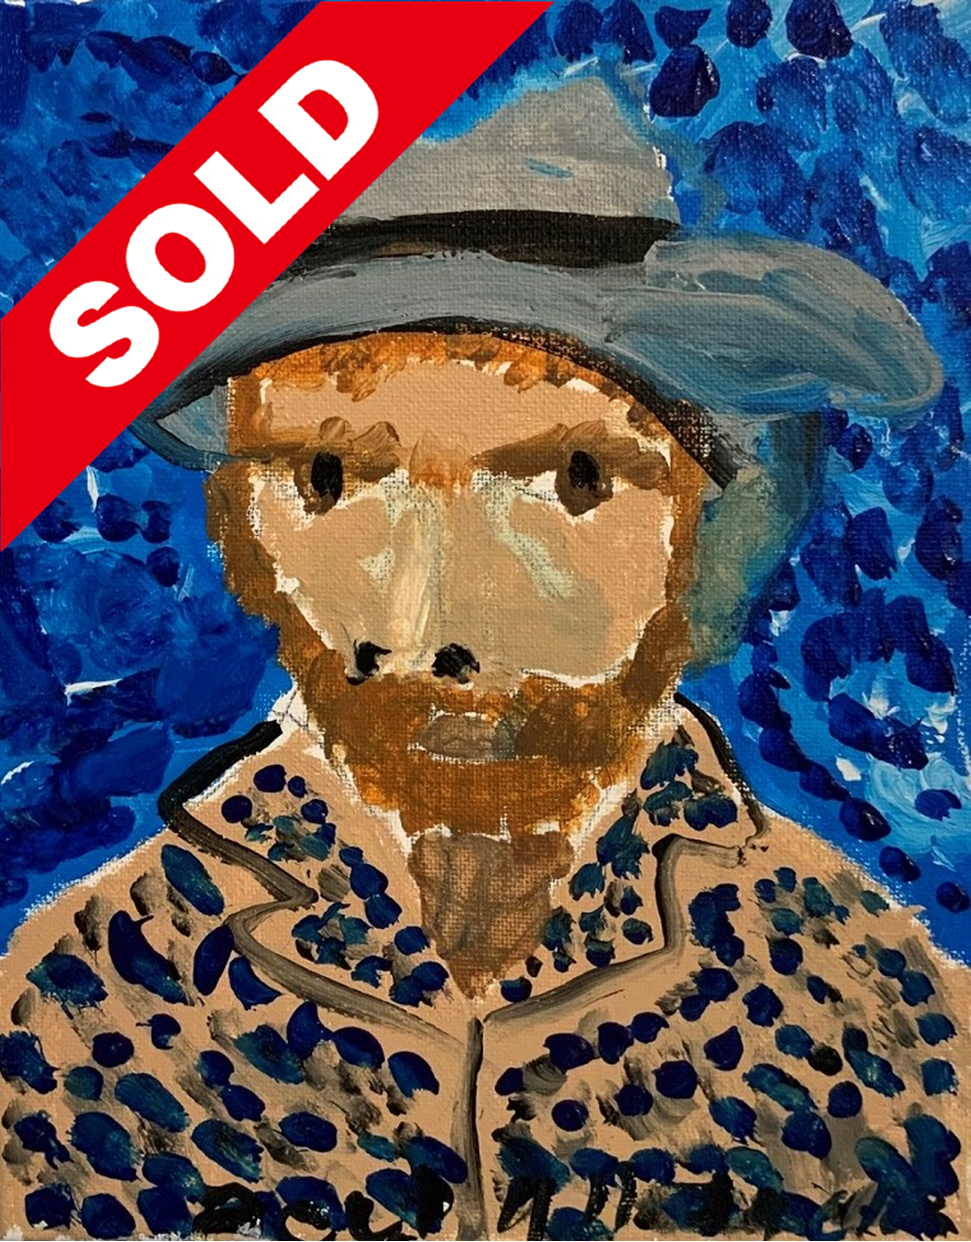 "Van Gogh series" by Declan Jack